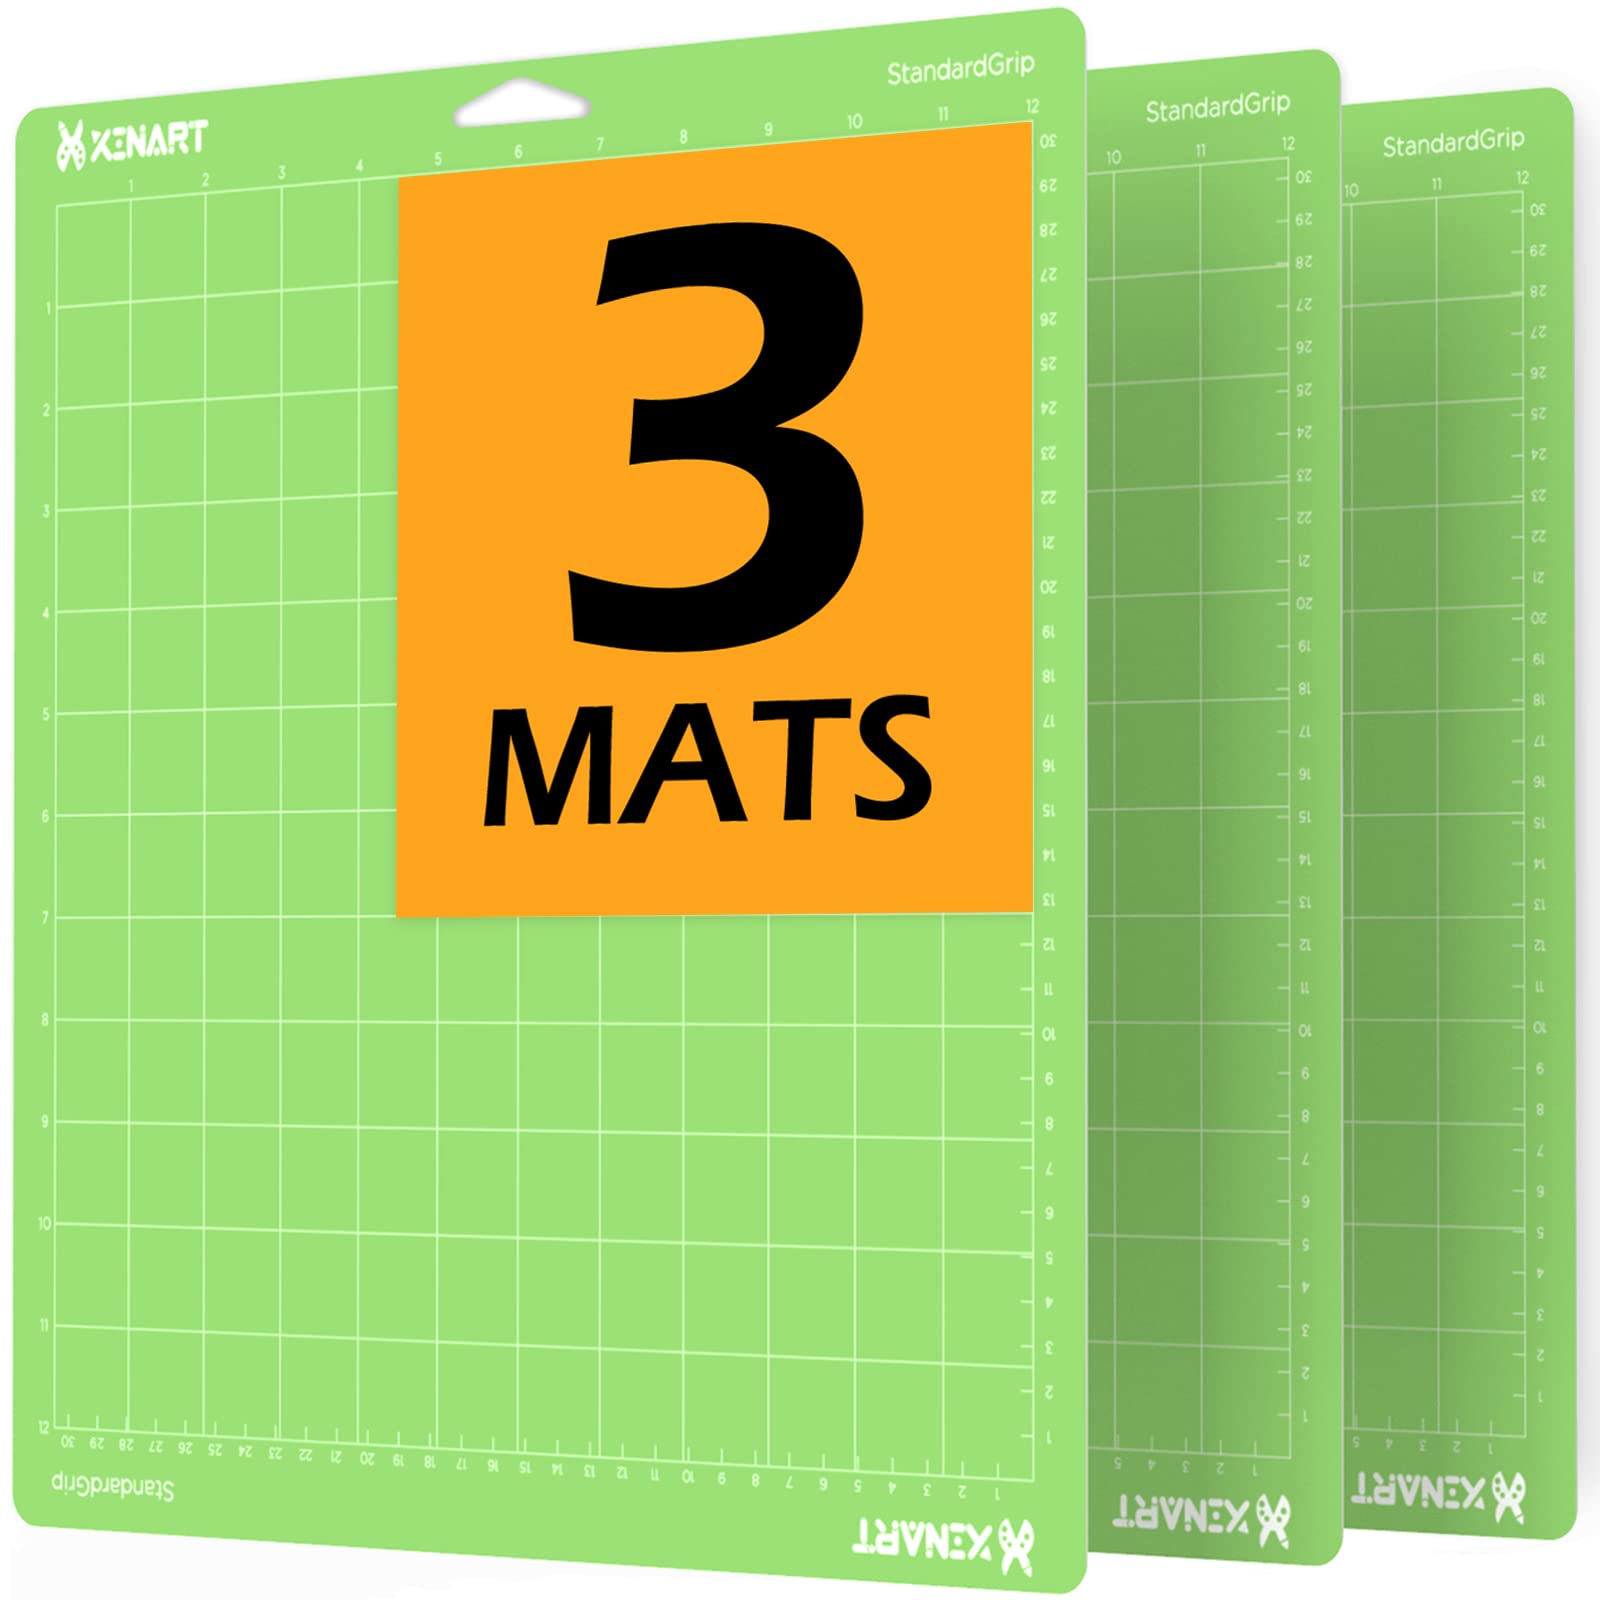 XINART StandardGrip Cutting Mat for Cricut Maker 3/Maker/Explore 3